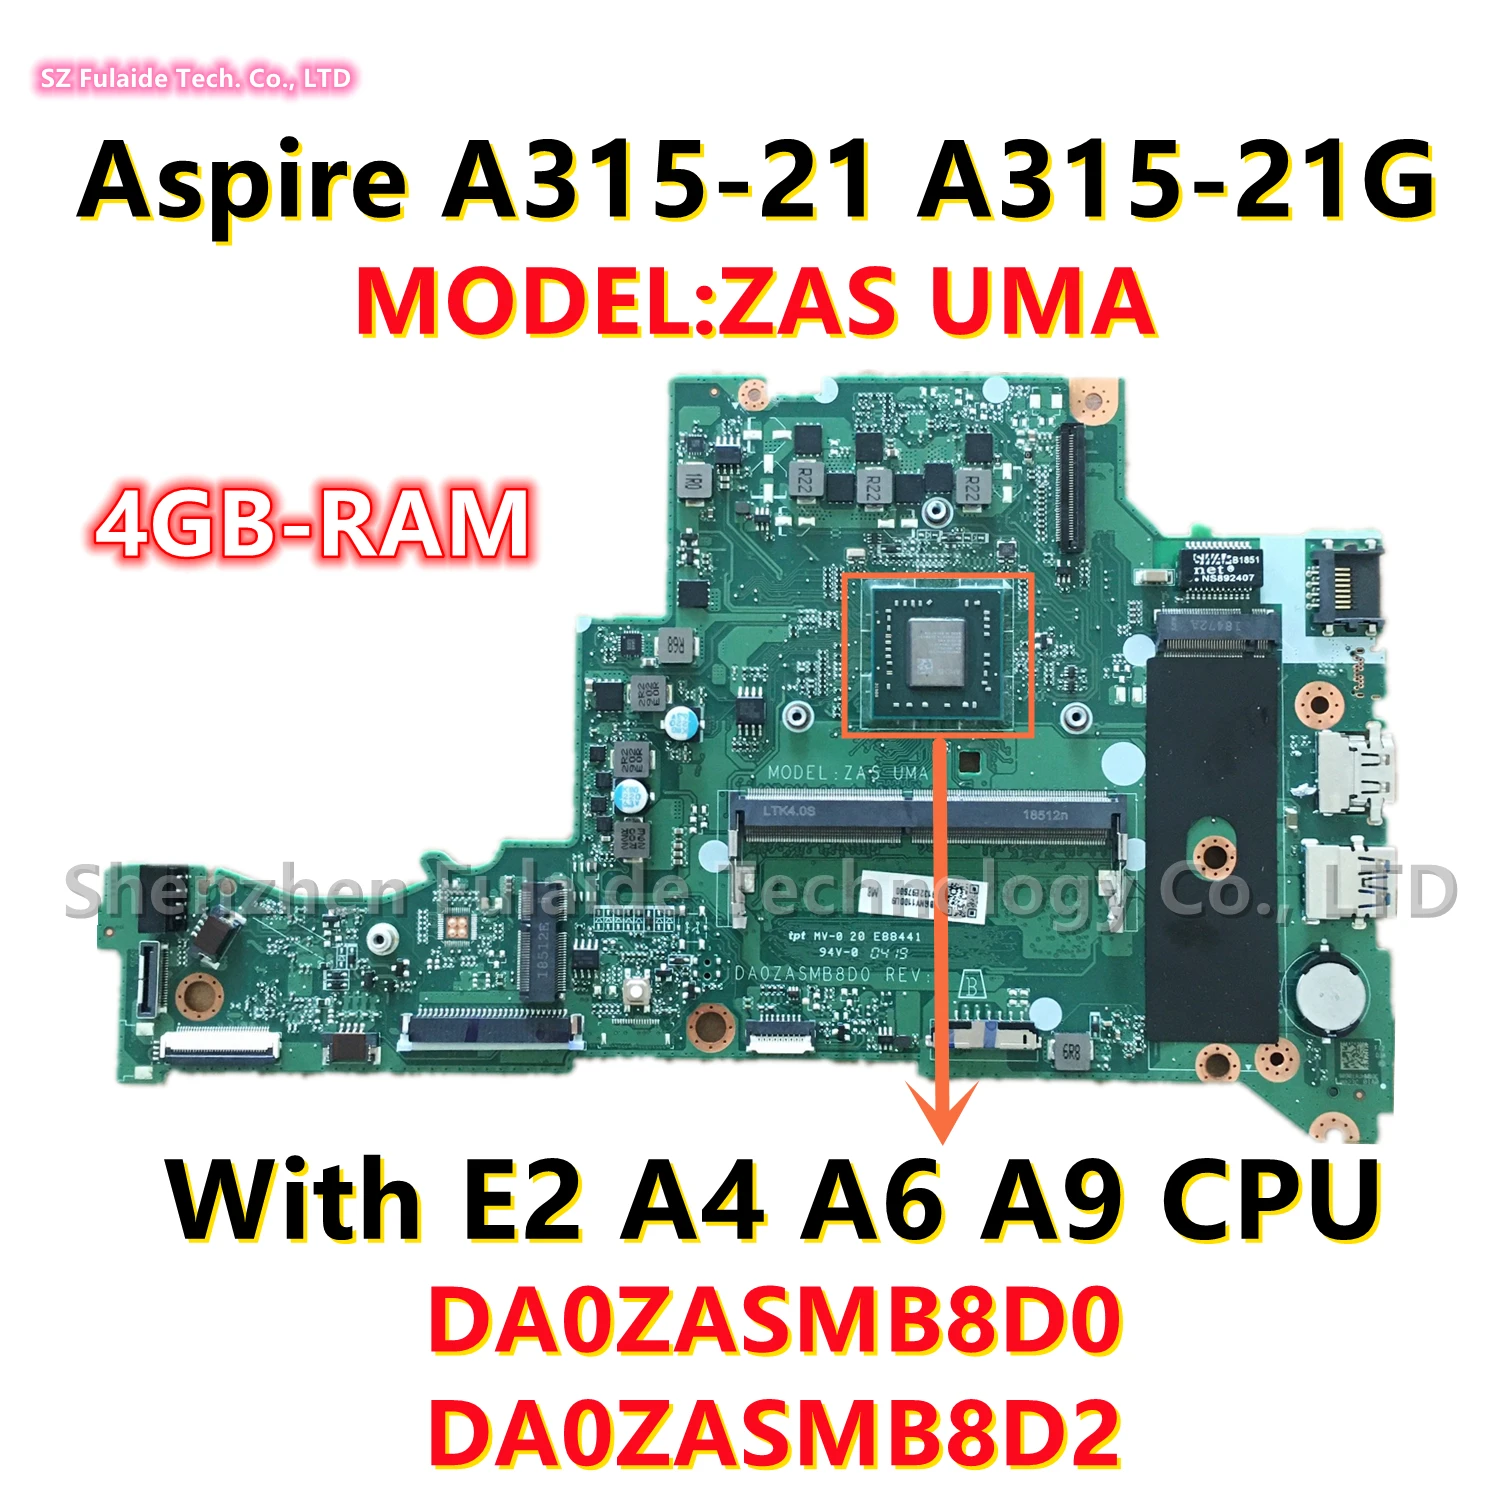 

DA0ZASMB8D0 DA0ZASMB8D2 For Acer Aspire A315-21 A315-21G Laptop Motherboard And E2 A4 A6 A9 CPU NBGNV1100W NBGNV1100U NBGNV11006